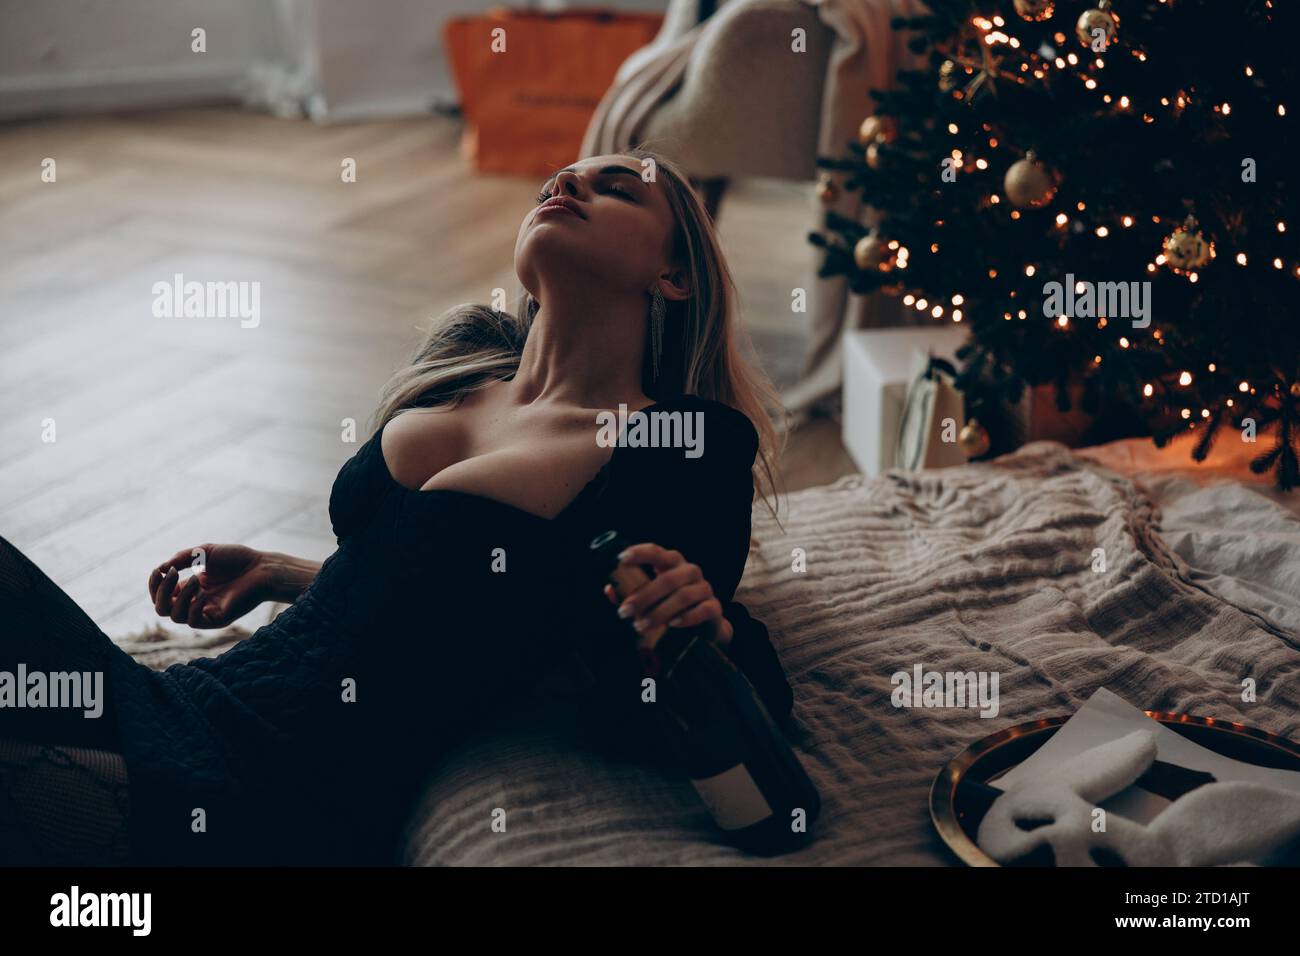 Junge blonde Frau, die neben dem Bett sitzt und sich in stilvollem schwarzen Minikleid mit Weinflasche in der Hand am Weihnachtsbaum entspannt. Nahaufnahme. Stockfoto